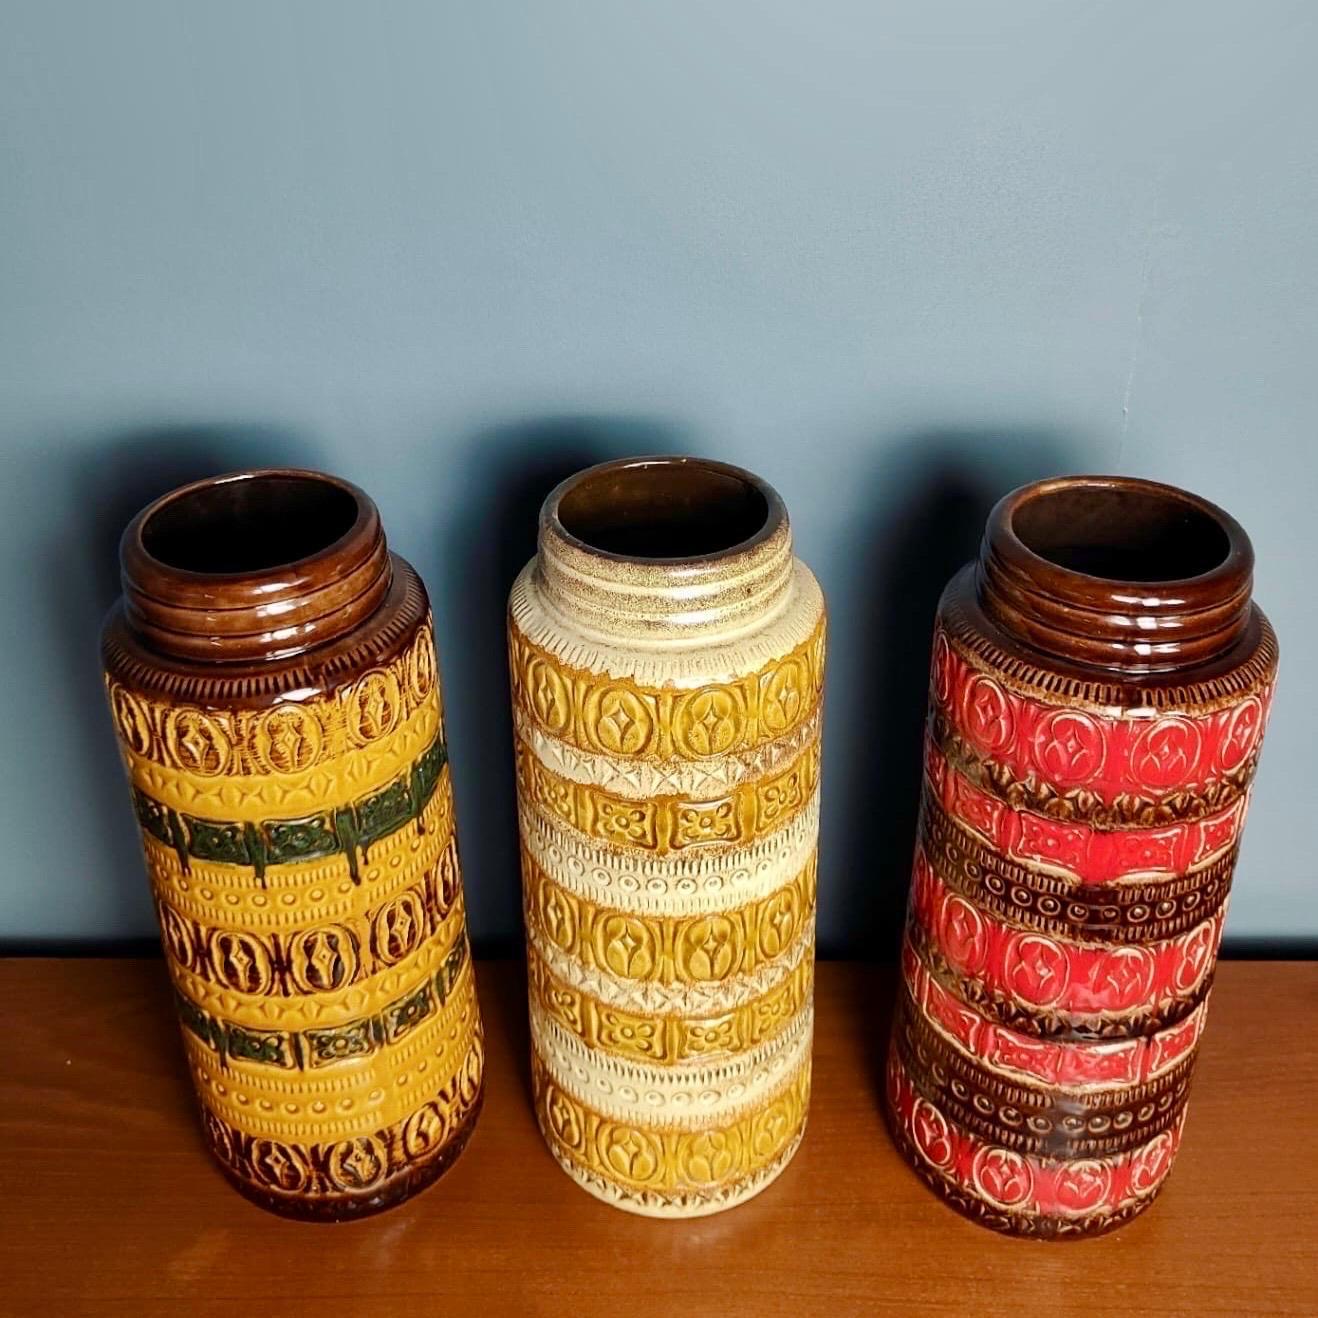 Neuer Bestand ✅

3 große westdeutsche Vasen, Keramik, Mid-Century Vintage, Retro MCM, Vintage

Verkauft als 3er-Set.

Tolle Farben aus der Mitte des Jahrhunderts und in perfektem Zustand. Sie weisen keine Chips oder Risse auf.

Abmessungen
Höhe -